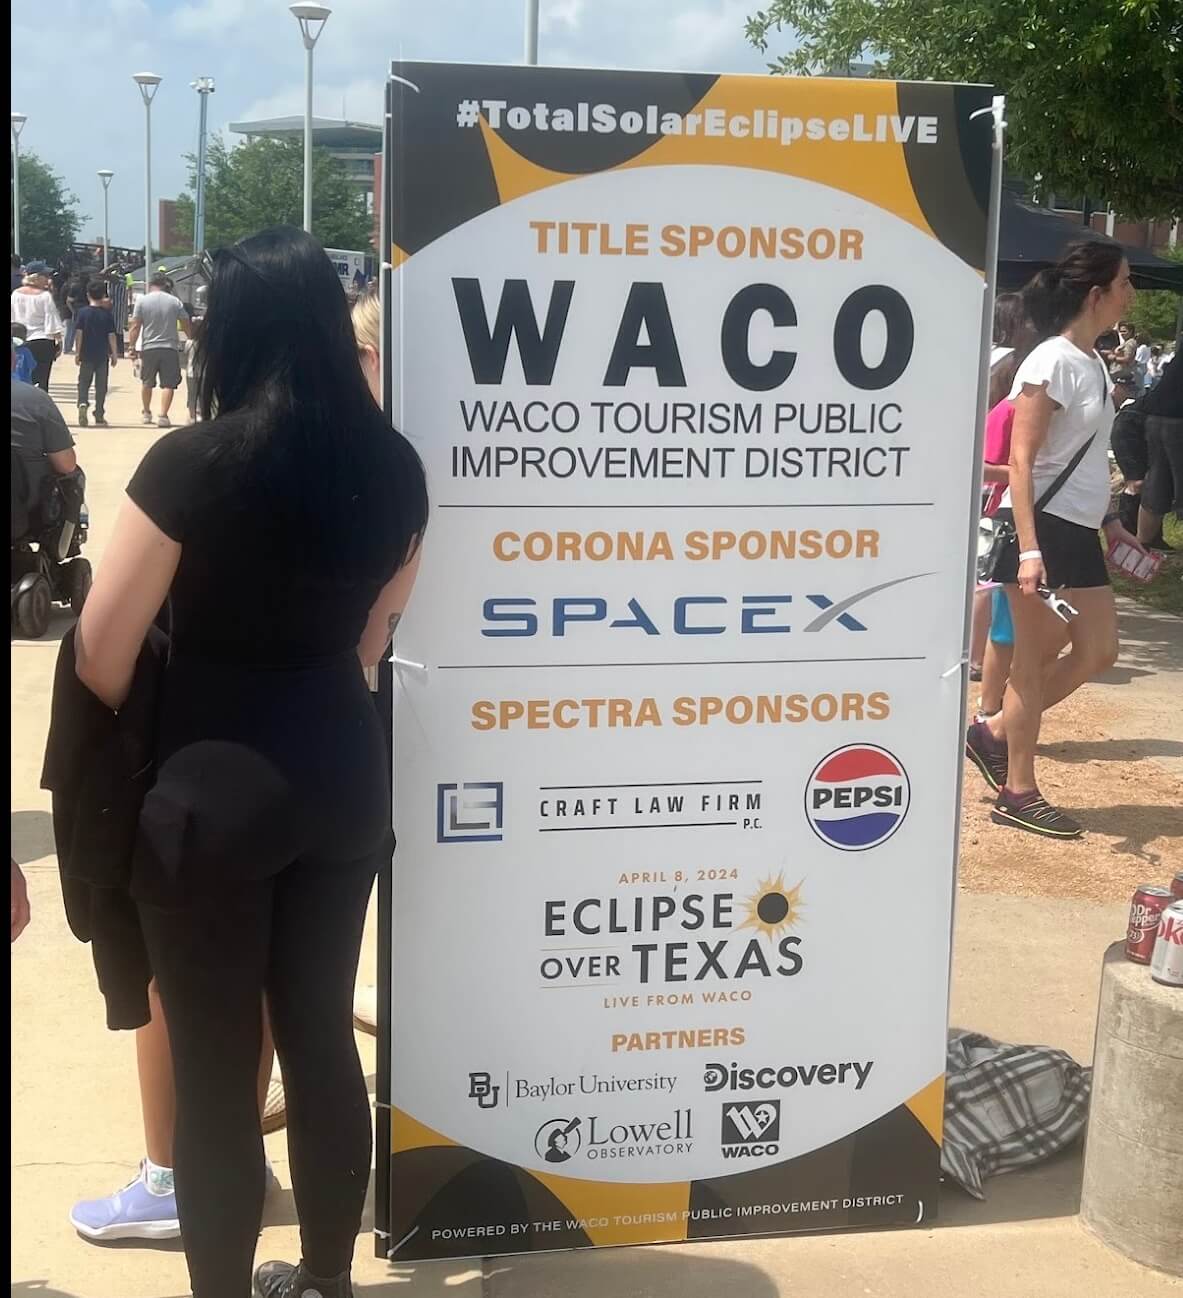 The solar eclipse sponsorship sign in Waco. Photo: Avi Blizovsky